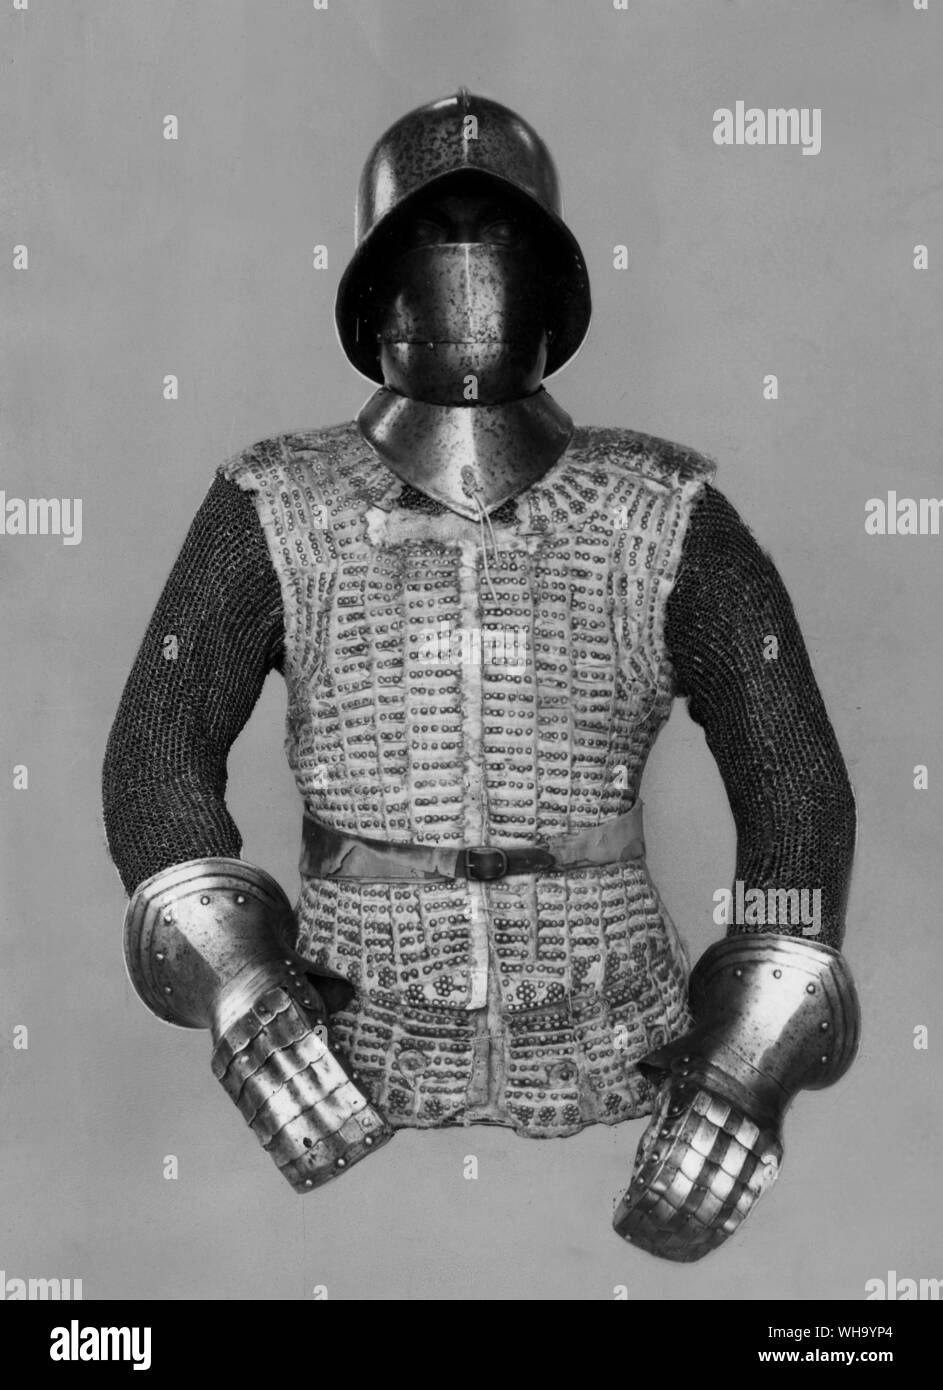 Spanien: Brigadine ursprünglich mit rotem Samt überzogen. Anfang des 16. Jahrhunderts montiert mit cabaceti, barboti, mail Ärmel und Stulpen in der spanischen Mode. Rüstung im Tower von London zu sehen. Stockfoto